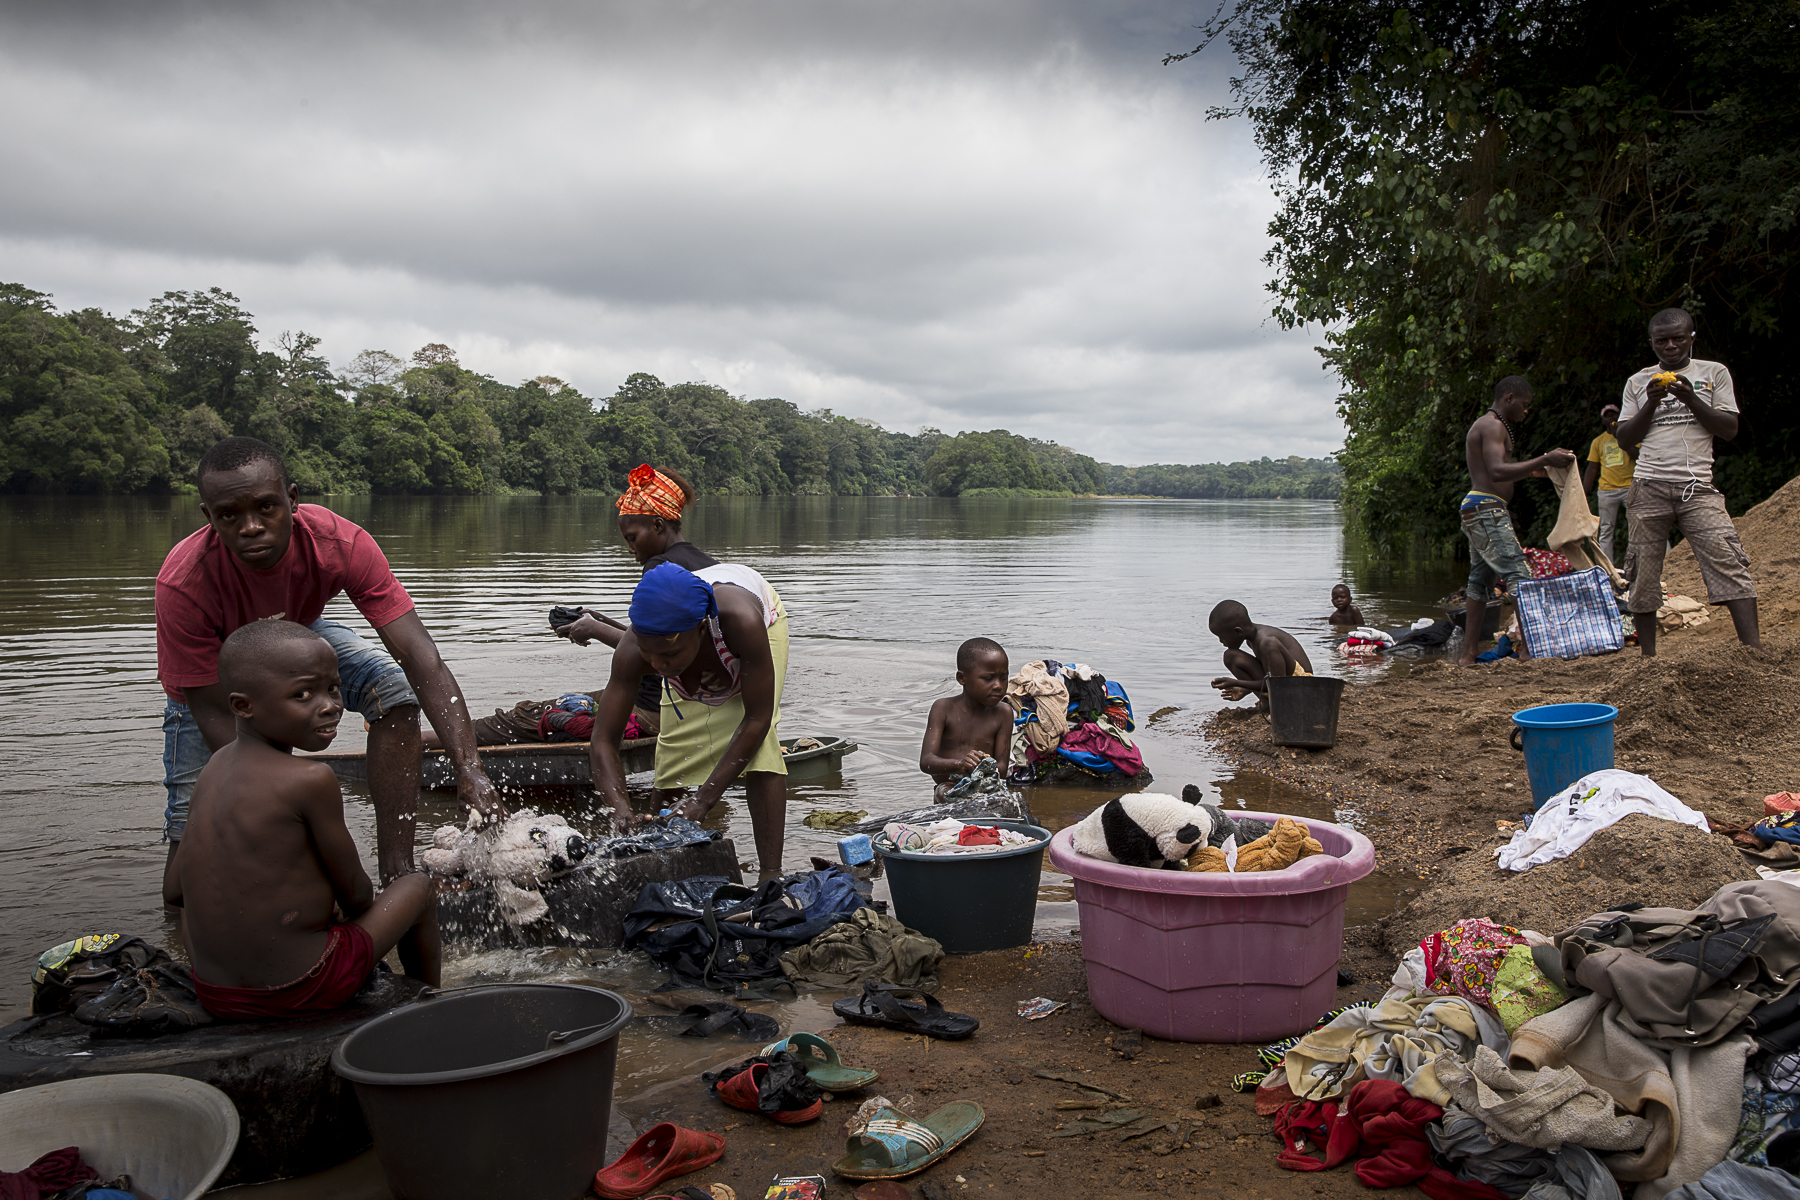 La rivière N\'goko à Mouloundou, à 65 km du piont zéro.C\'est la route fluviale qu\'a emprunté le patient zéro au debut du 20 ème siècle pour aller vers Léopoldville, aujoud\'hui Kinshasa et permettre à l\{quote}épidémie de se rependre.